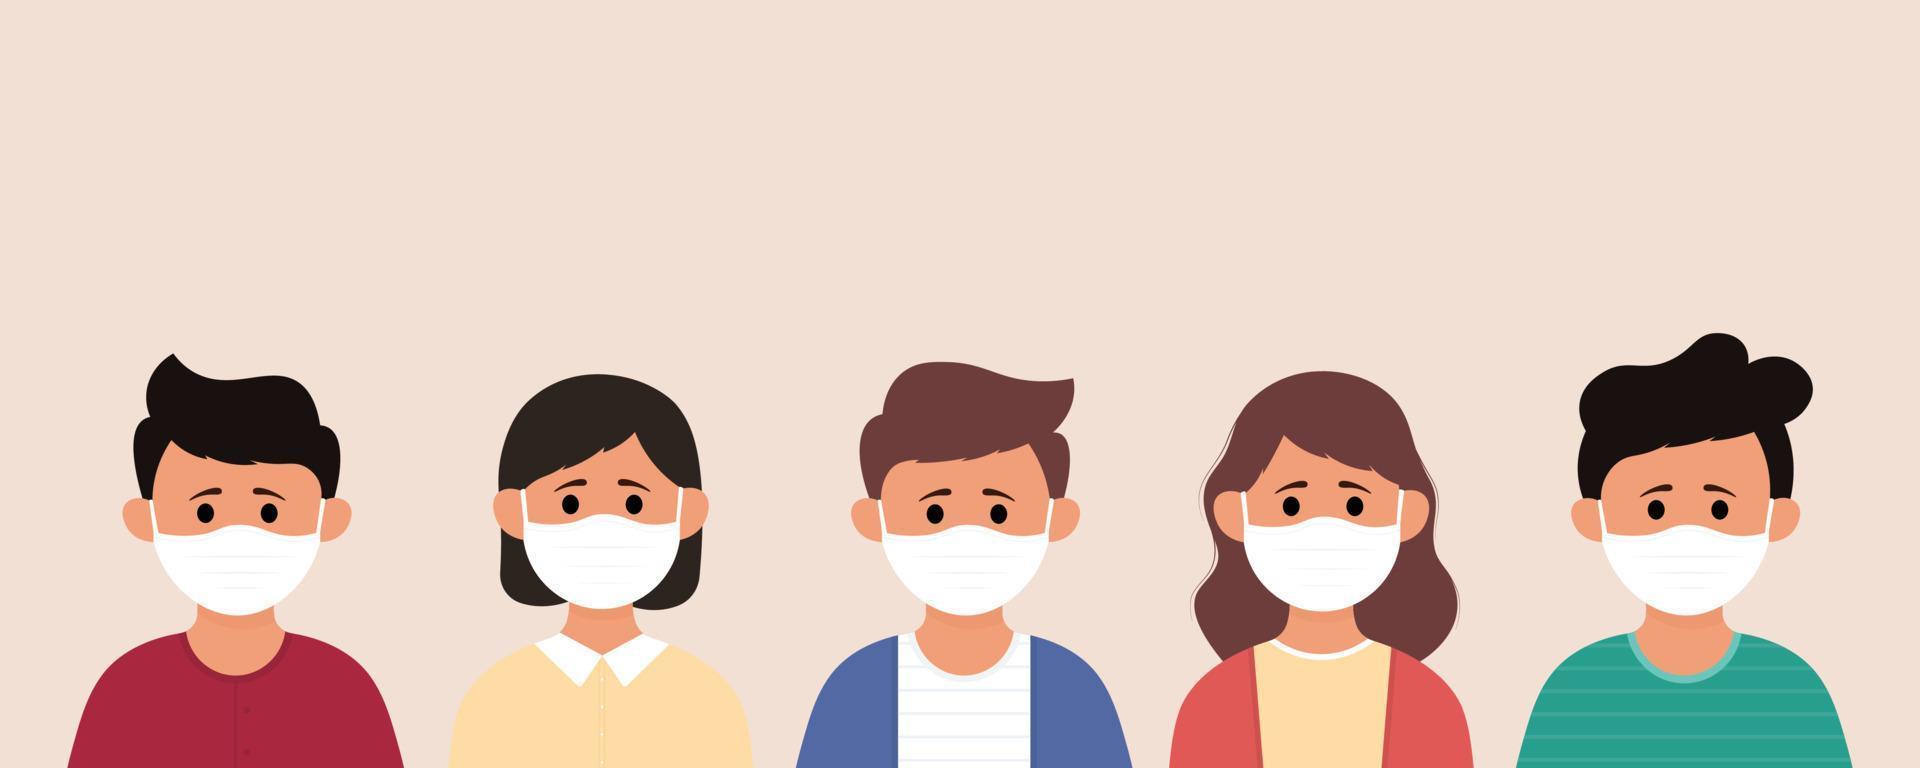 gruppo di bambini che indossano una maschera medica per prevenire malattie, influenza, inquinamento atmosferico, aria contaminata, inquinamento mondiale vettore